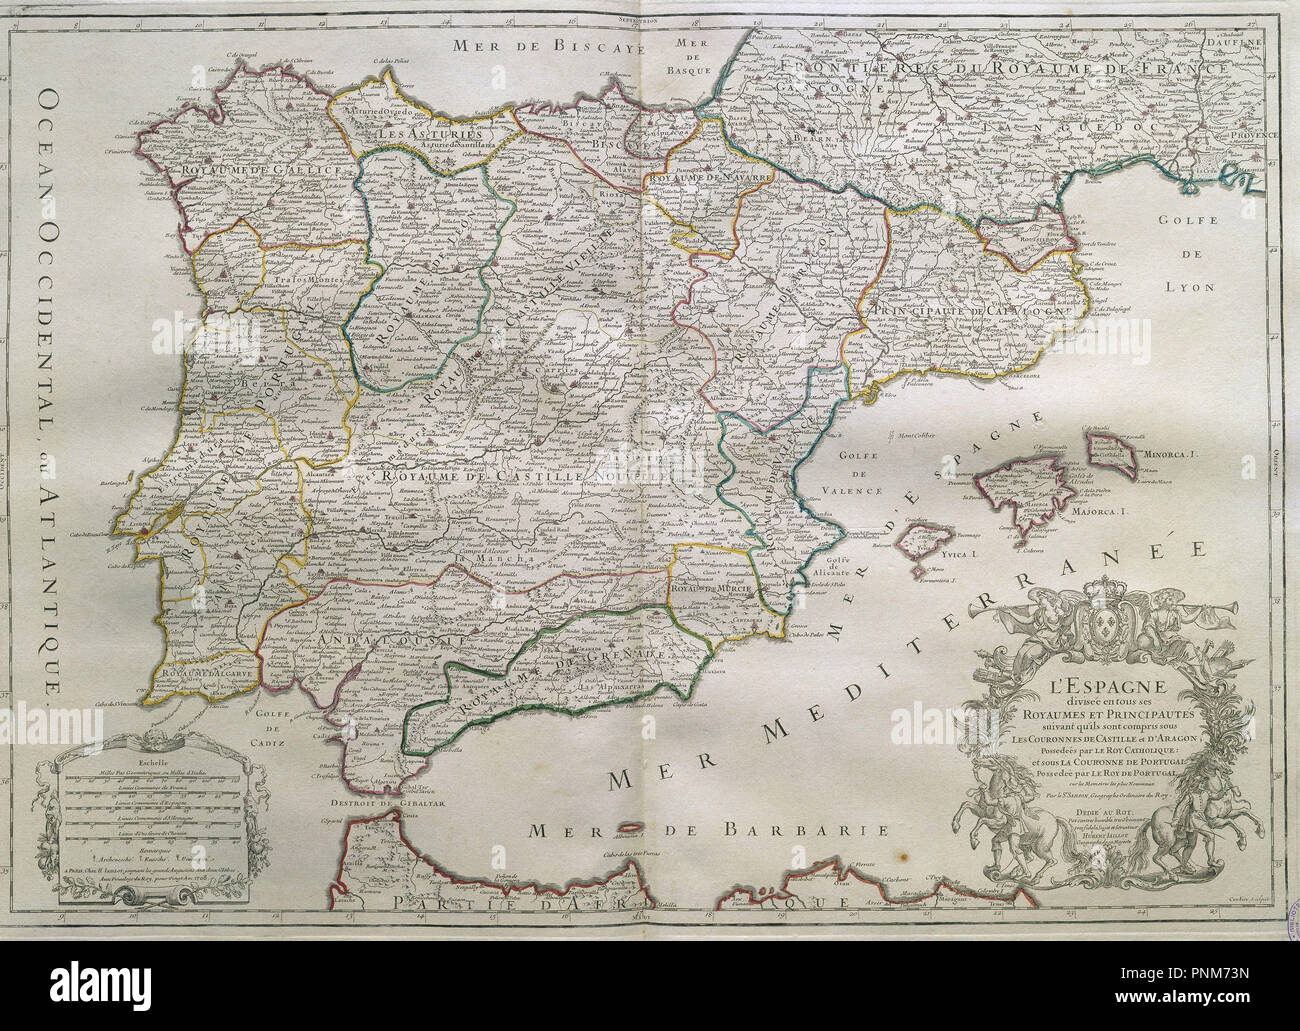 MAPA-ESPAÑA Y PORTUGAL DIVIDIDA EN REINOSY PRINCIPADOS-1708. Author: IAILLOT H. Location: BIBLIOTECA NACIONAL-COLECCION. MADRID. Stock Photo